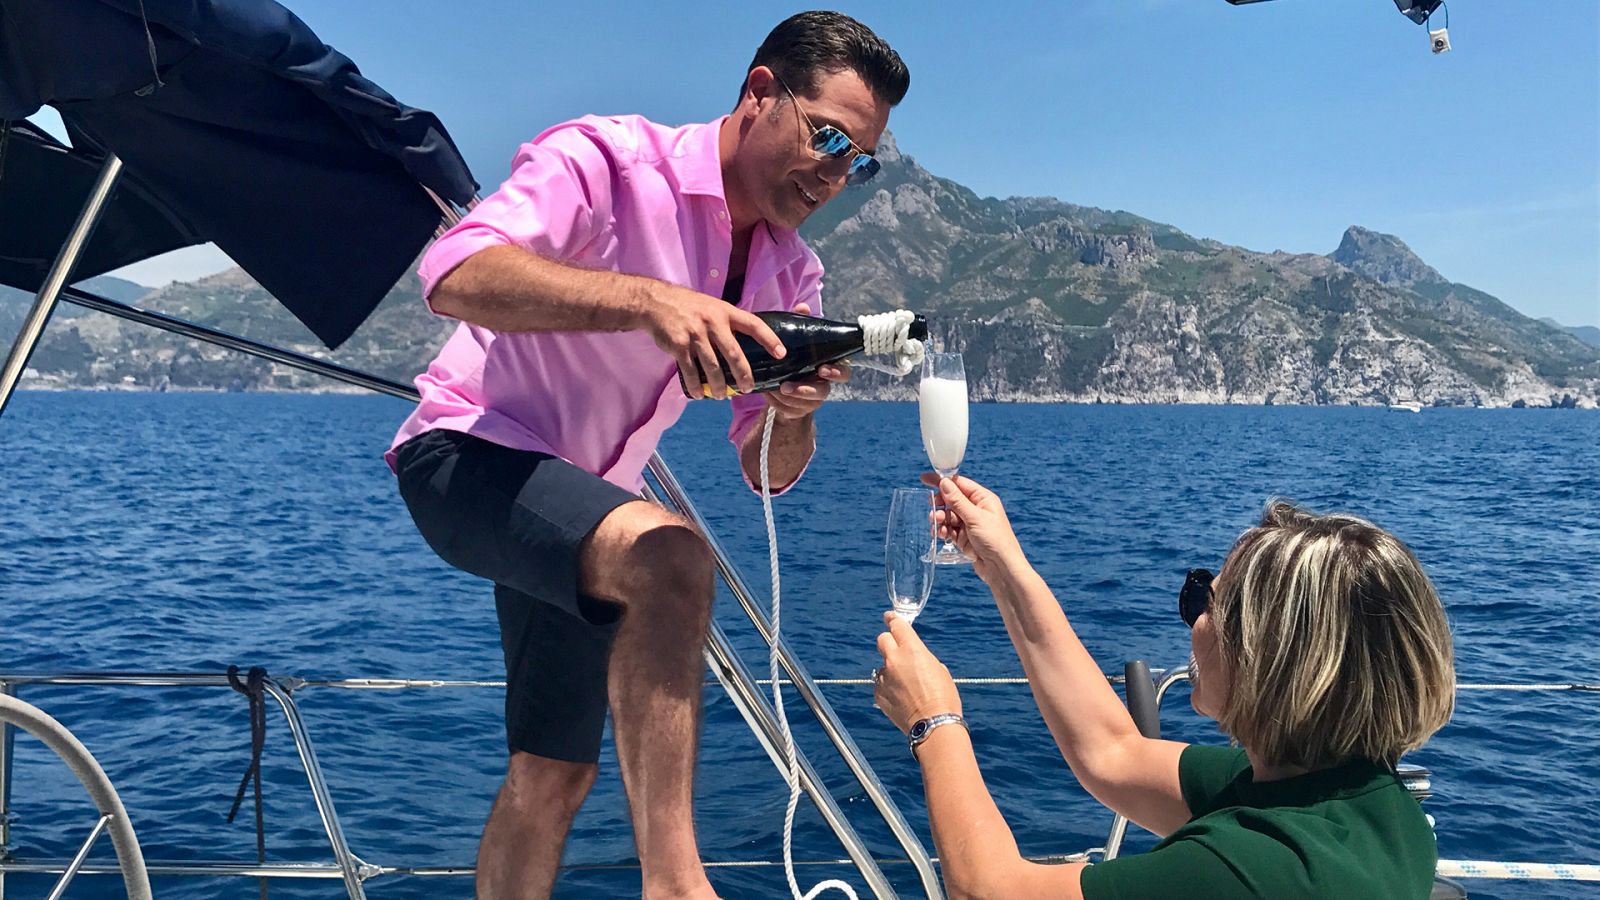 La escapada costera de Gino en Italia - Episodio 4: Elba - Documental en RTVE